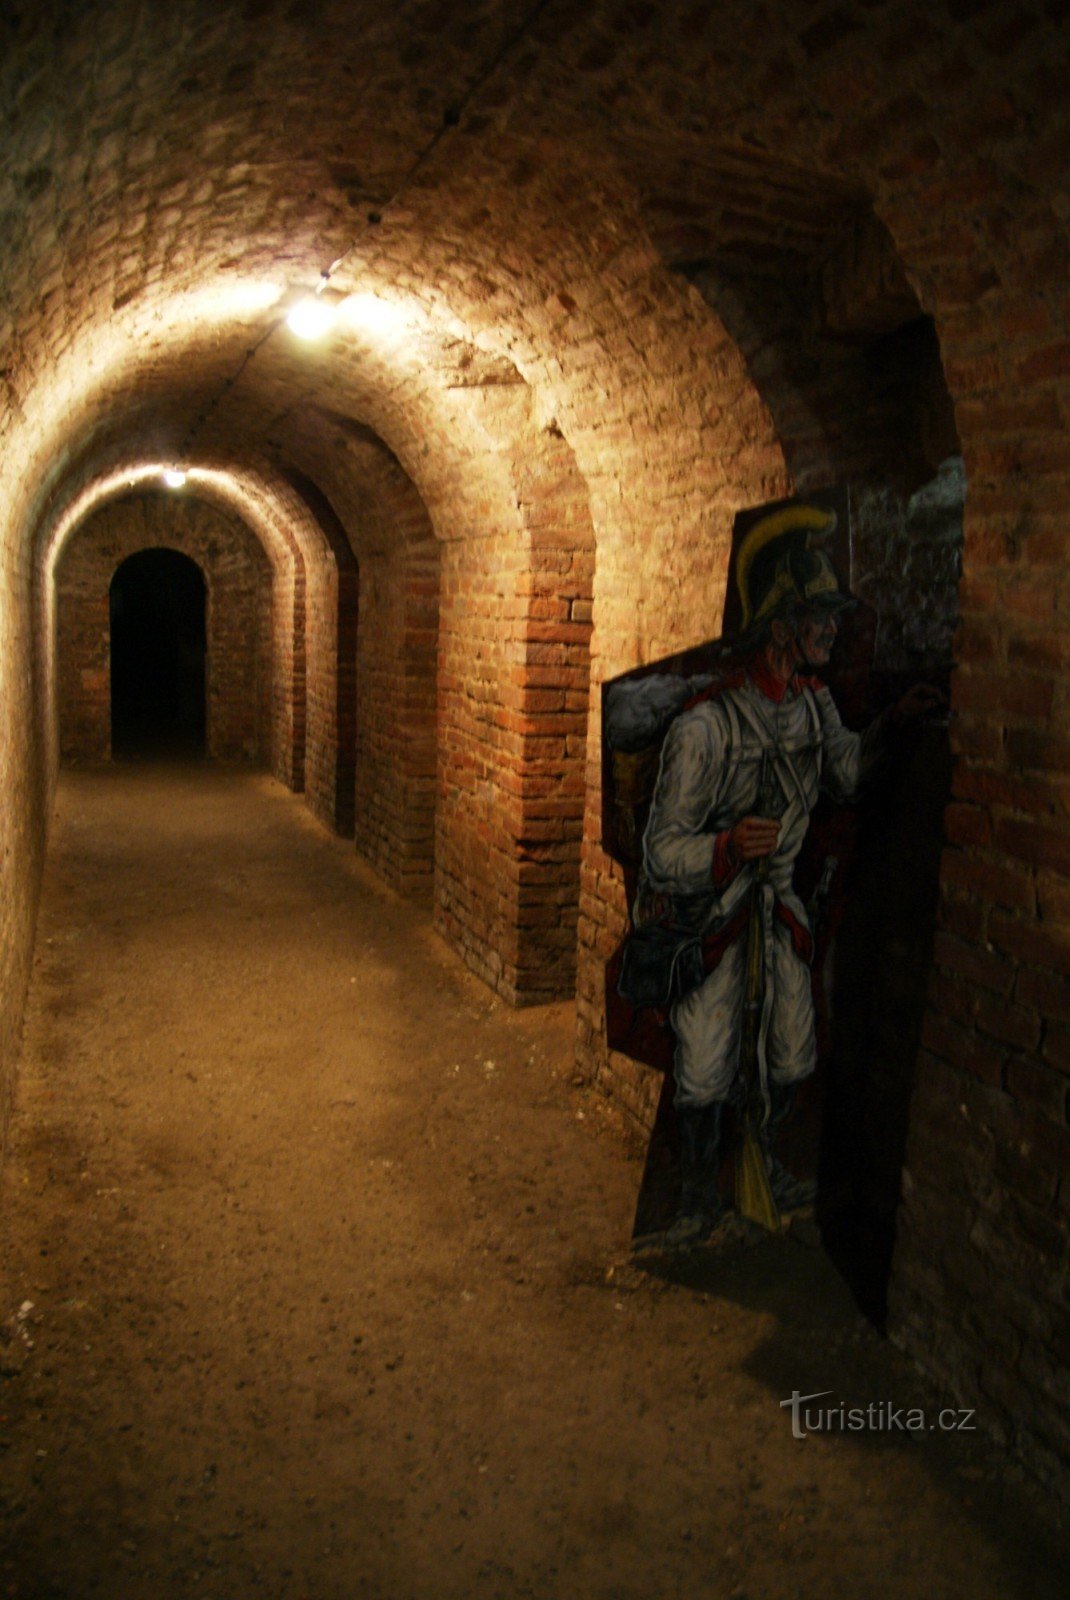 Underjordisk fæstning i Josefov